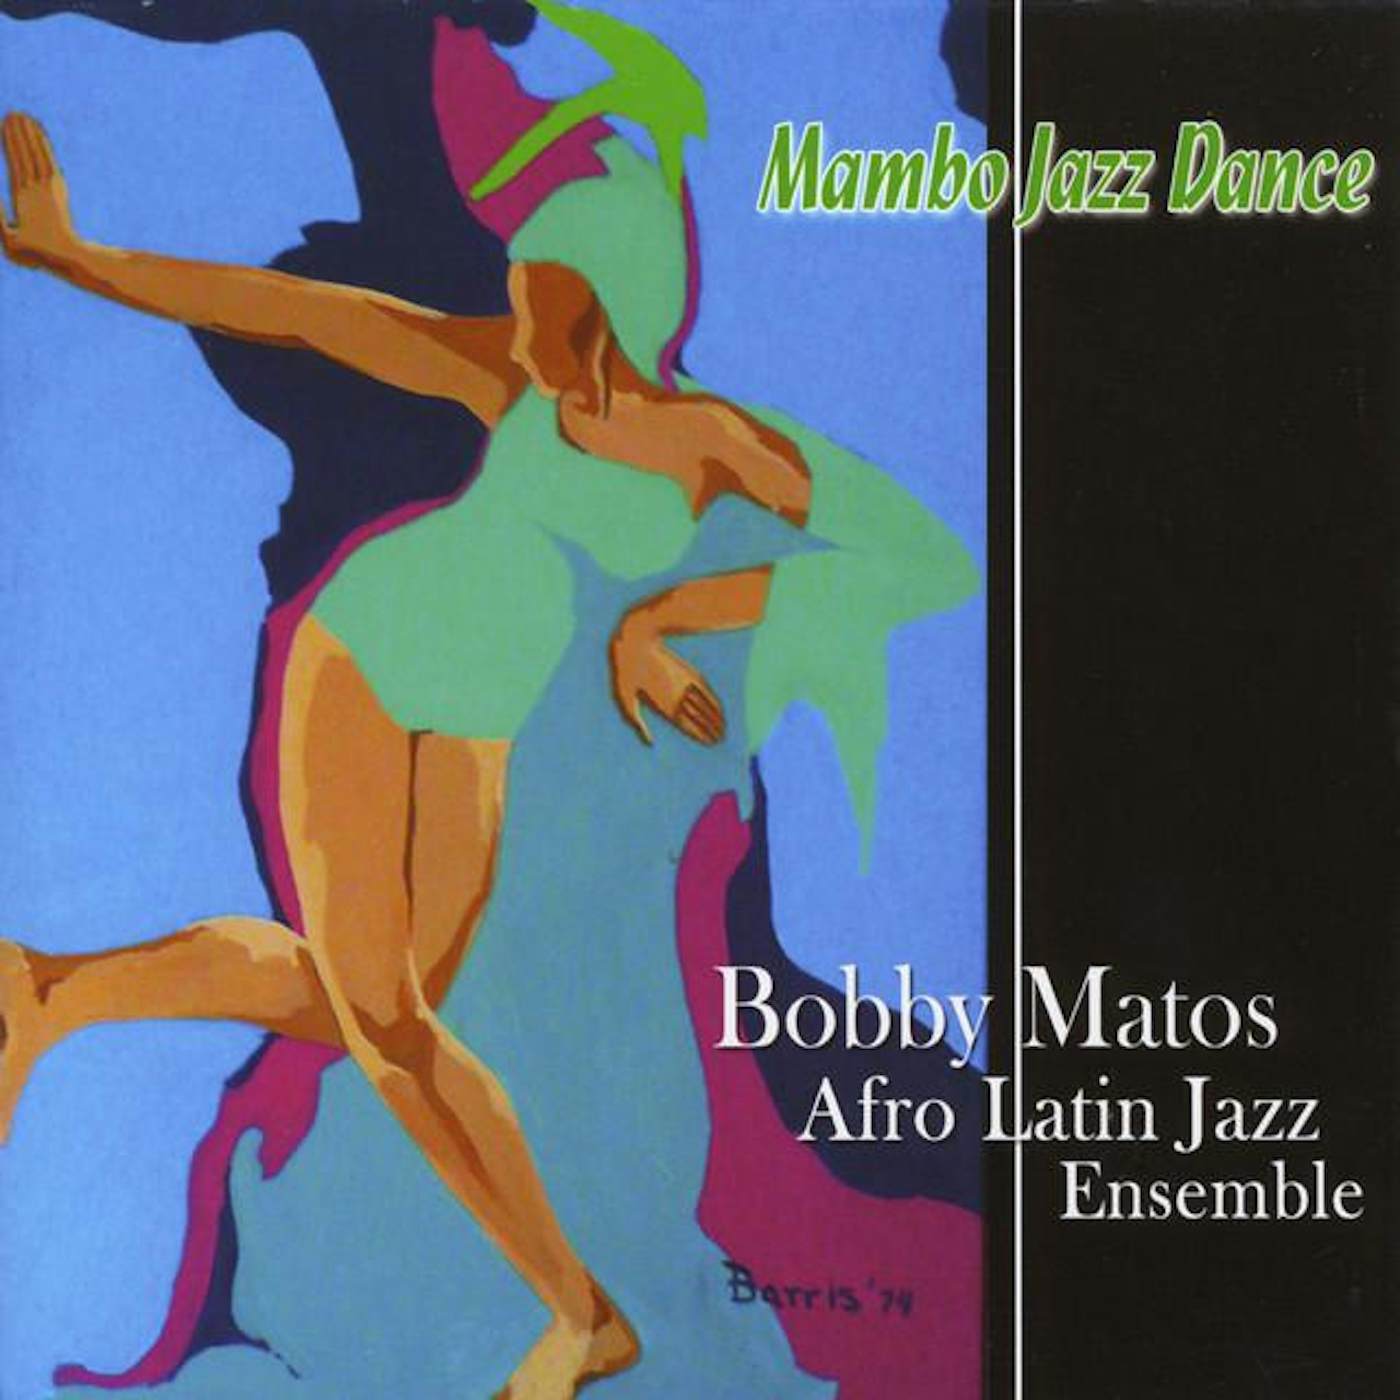 Bobby Matos & His Afro Latin Jazz Ensemble